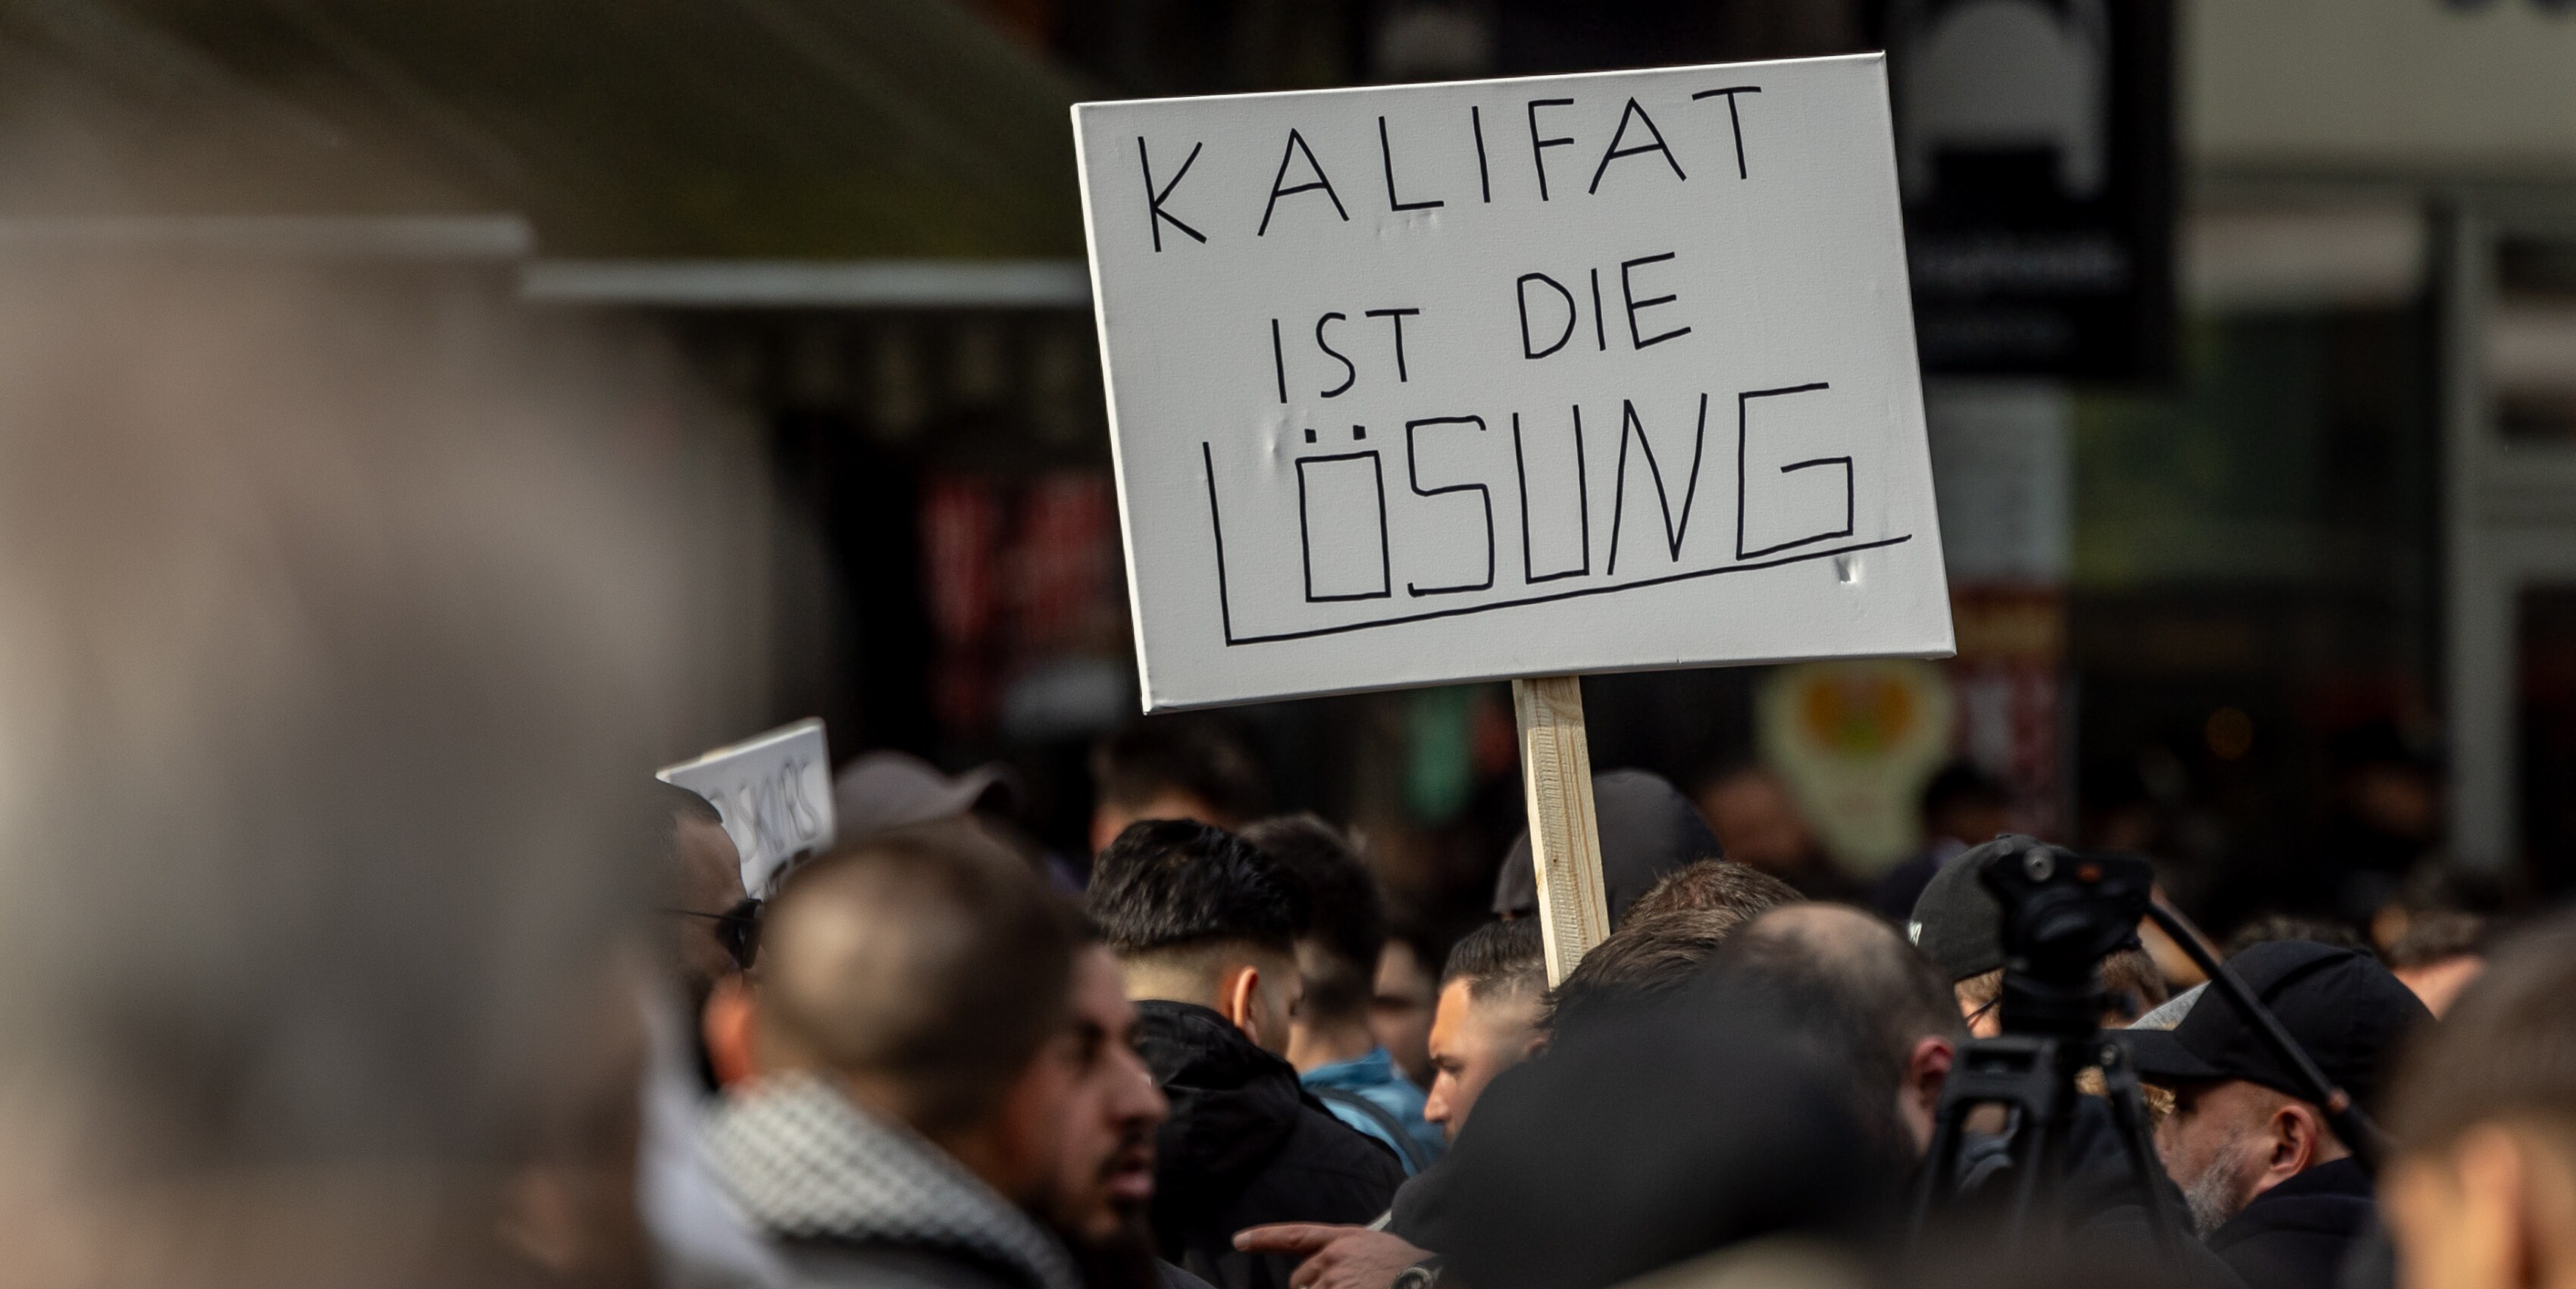 radikale muslime - demonstrationen für ein „kalifat“ in deutschland - ein spiel mit dem feuer